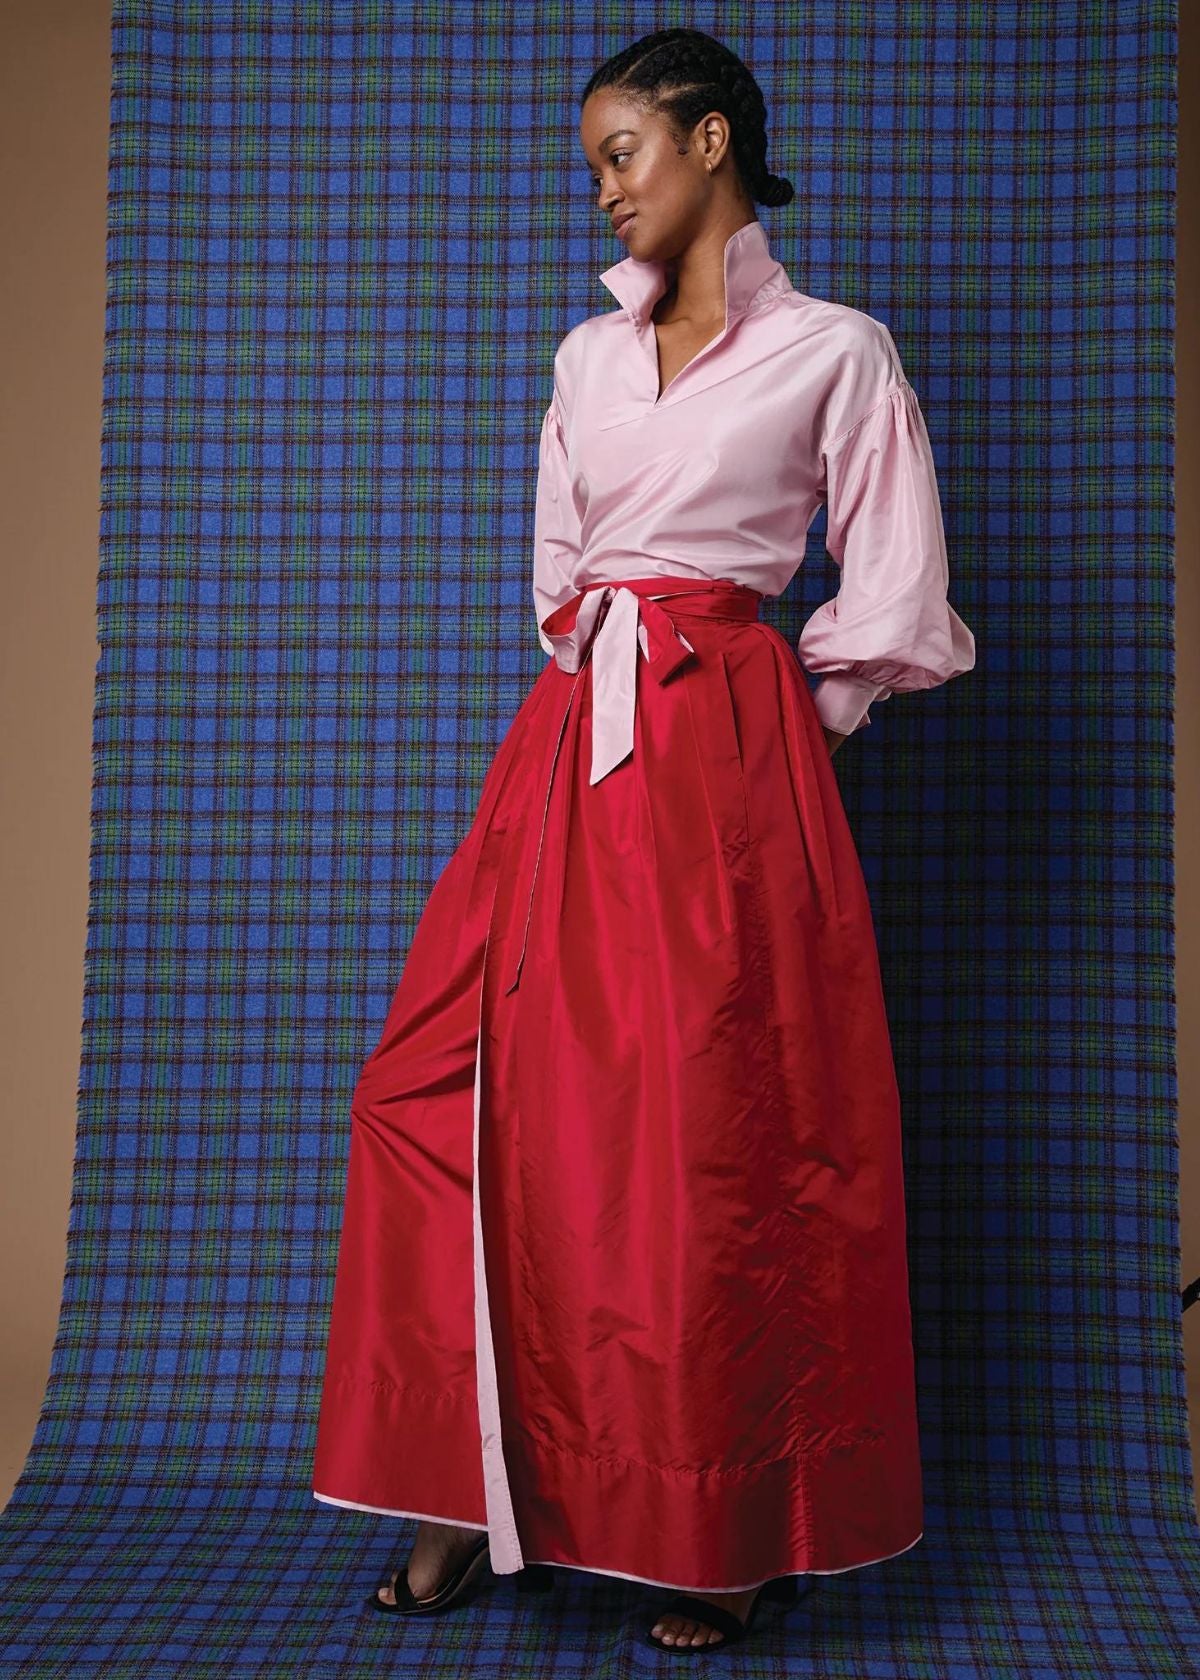 ANN MASHBURN Reversible Pleated Wrap Skirt - Light Pink/Red Silk Taffeta